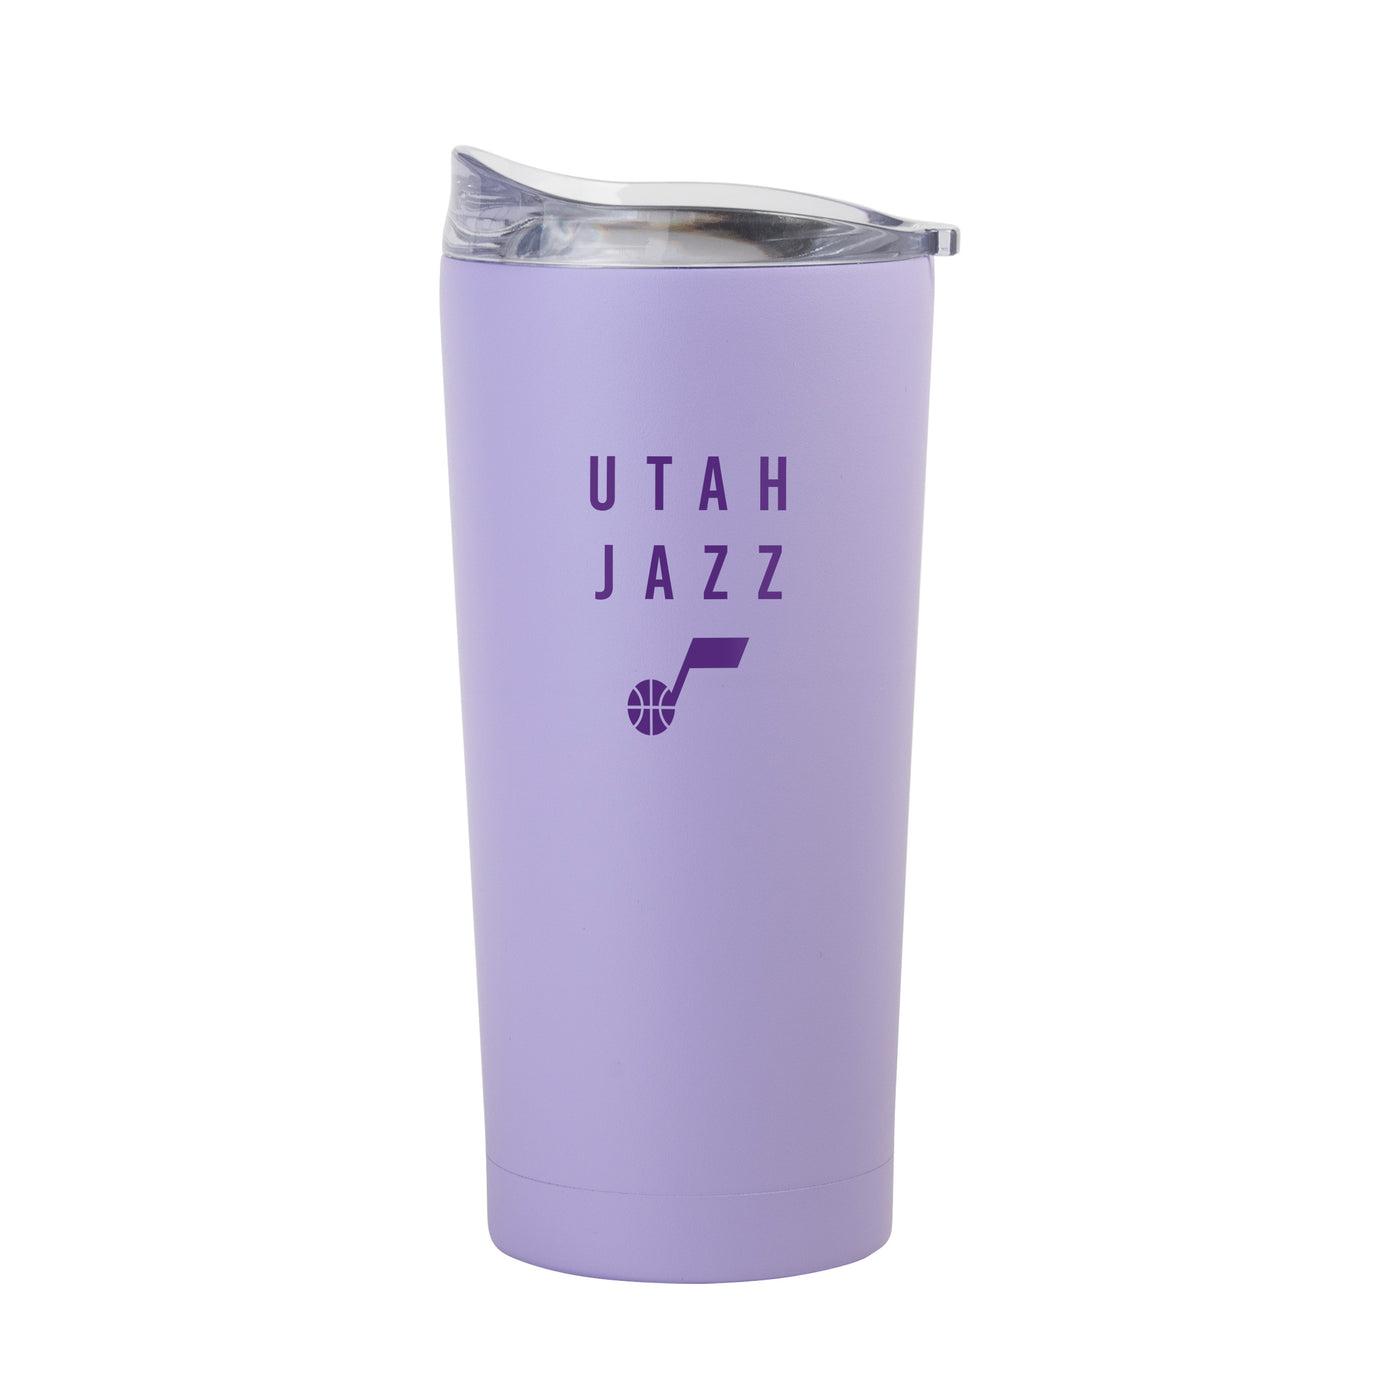 Utah Jazz 20oz Tonal Lavender Powder Coat Tumbler